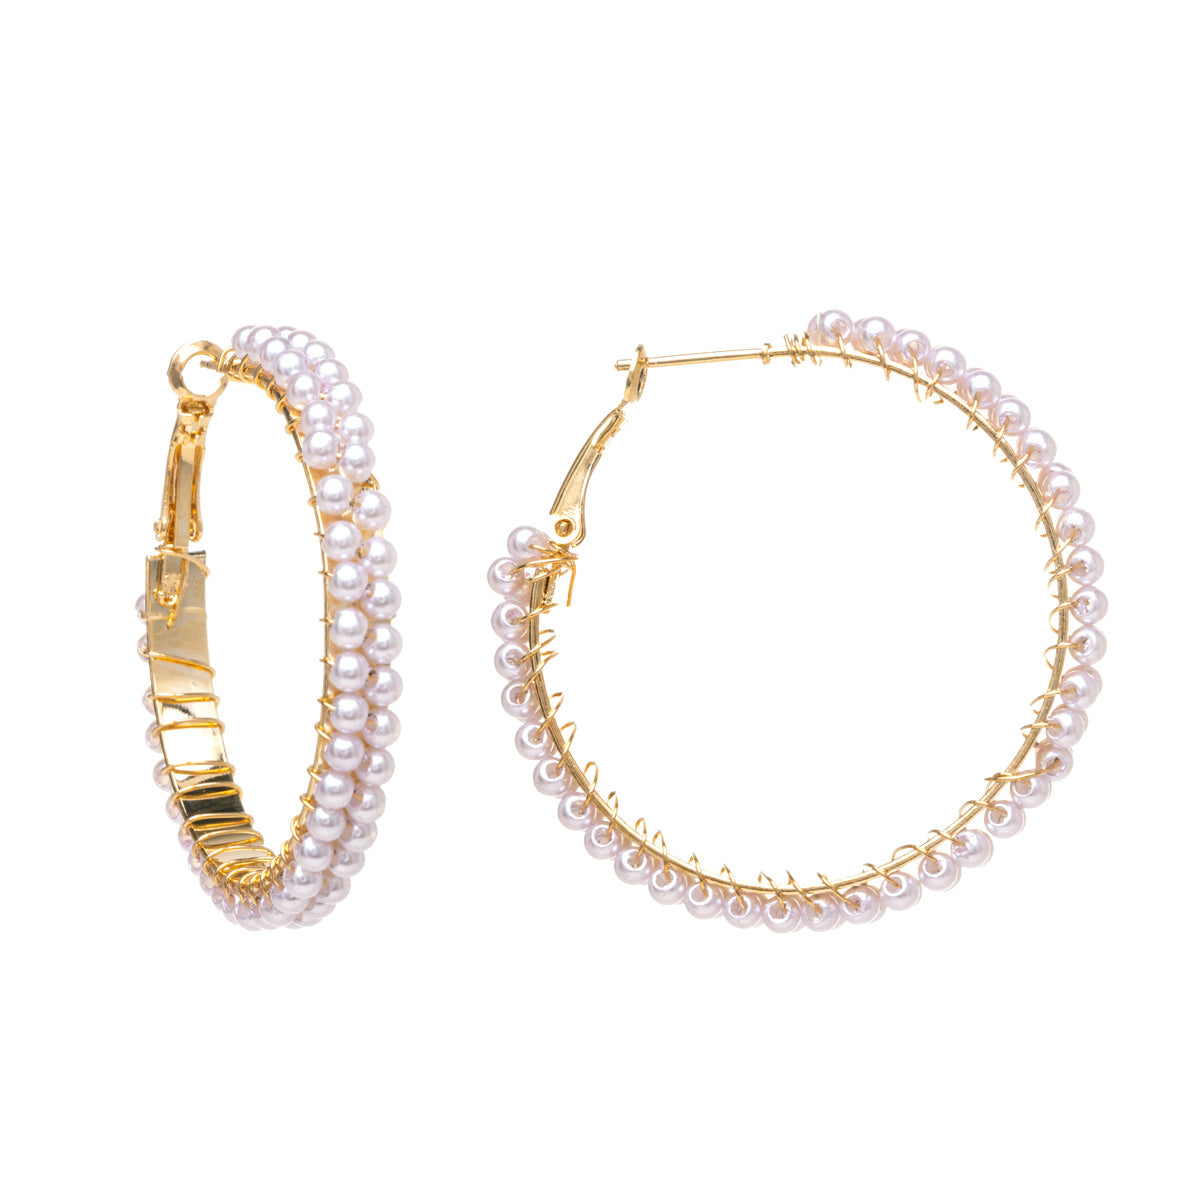 Double row pearl earrings 4cm